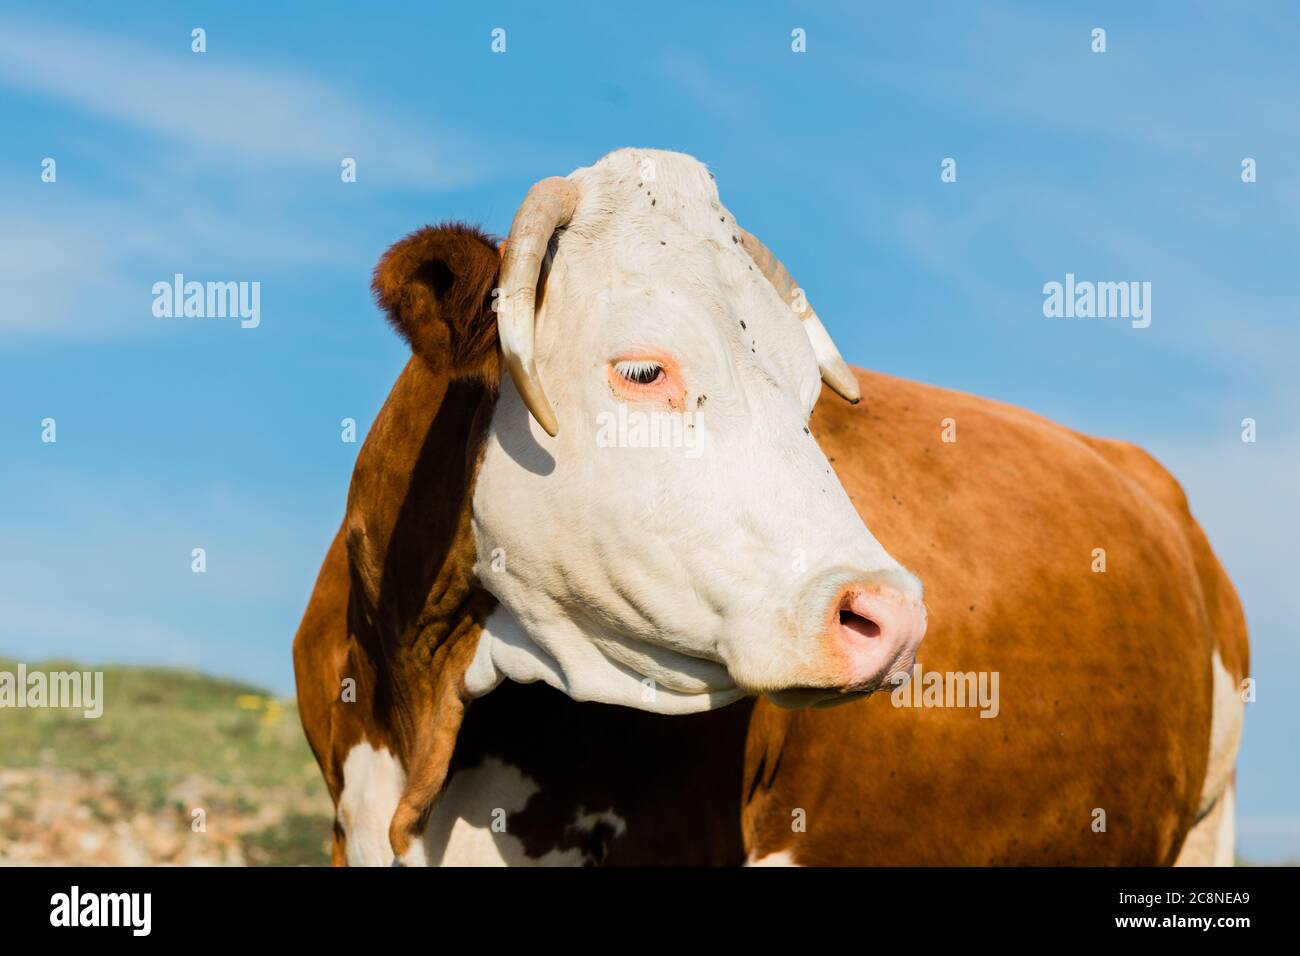 Vaca marrón y blanca en el campo Foto de stock